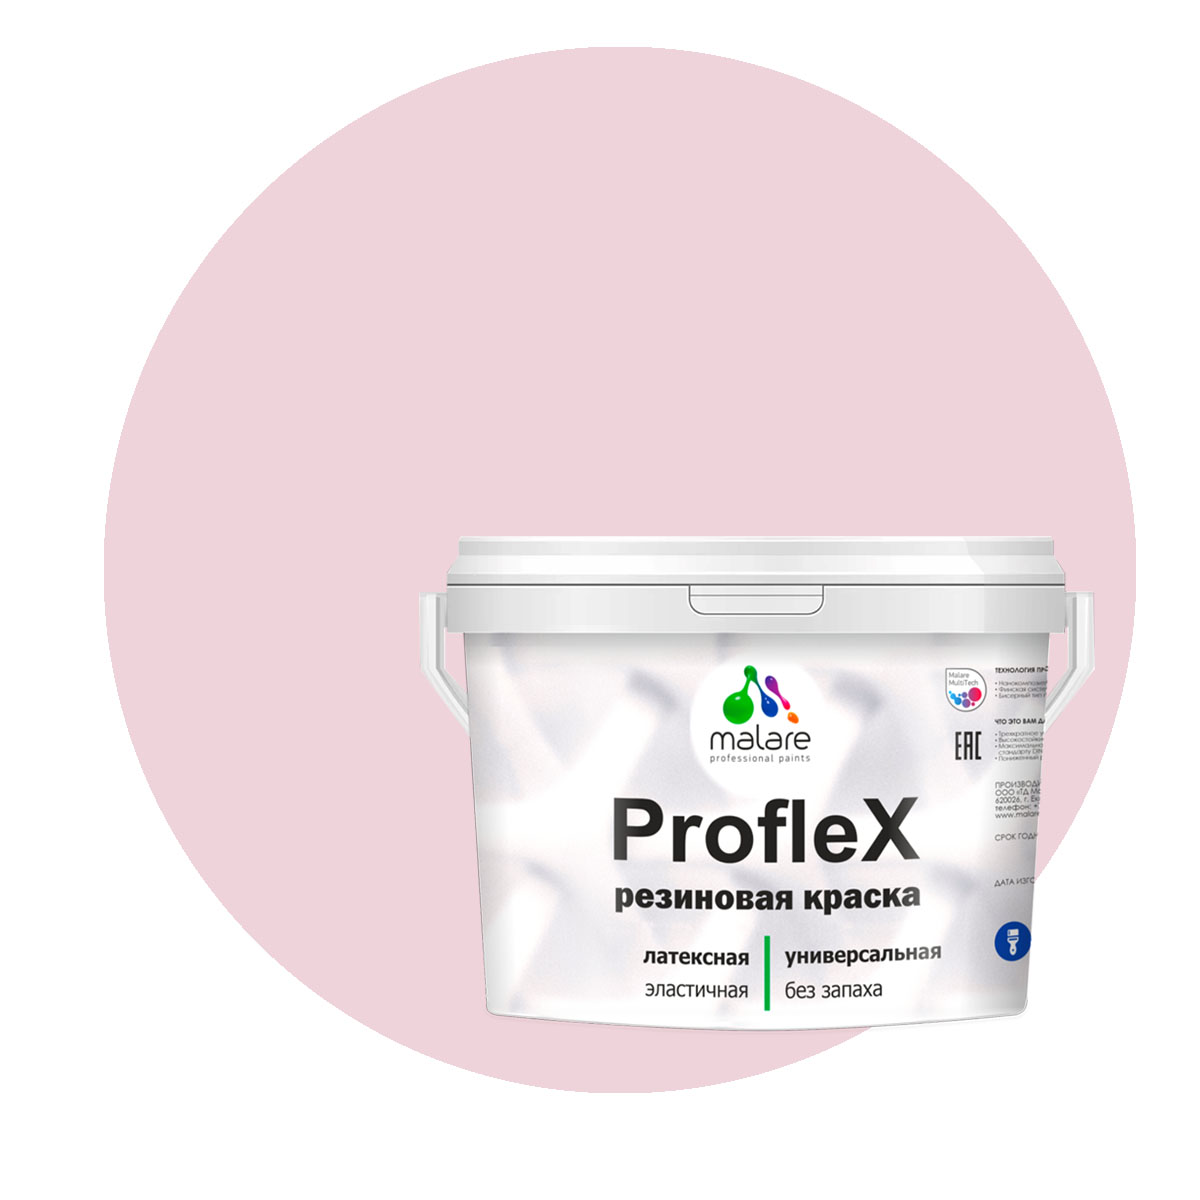 Краска Malare ProfleX для фасадов, интерьера, мебели, бледно-розовый, 10 кг. помада 310 бледно розовый